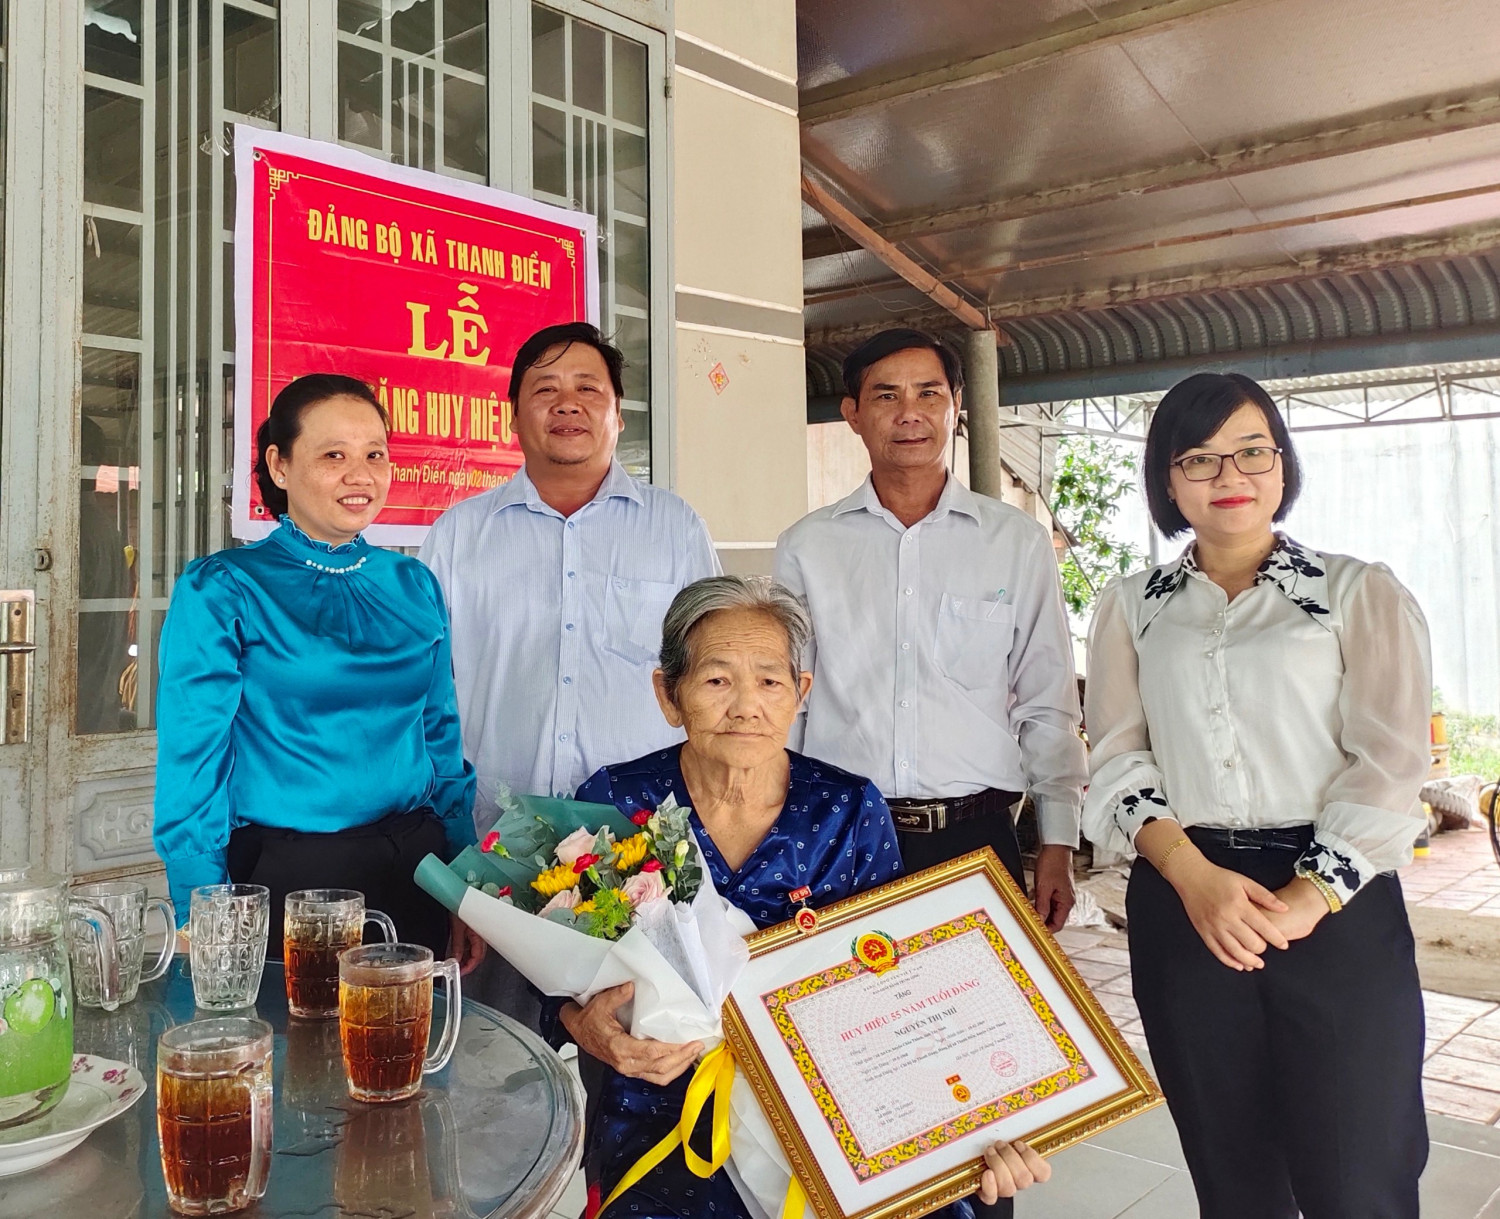 Huyện uỷ Châu Thành: Trao Huy hiệu 55 năm tuổi Đảng cho các đảng viên tại Đảng bộ xã Phước Vinh và Thanh Điền